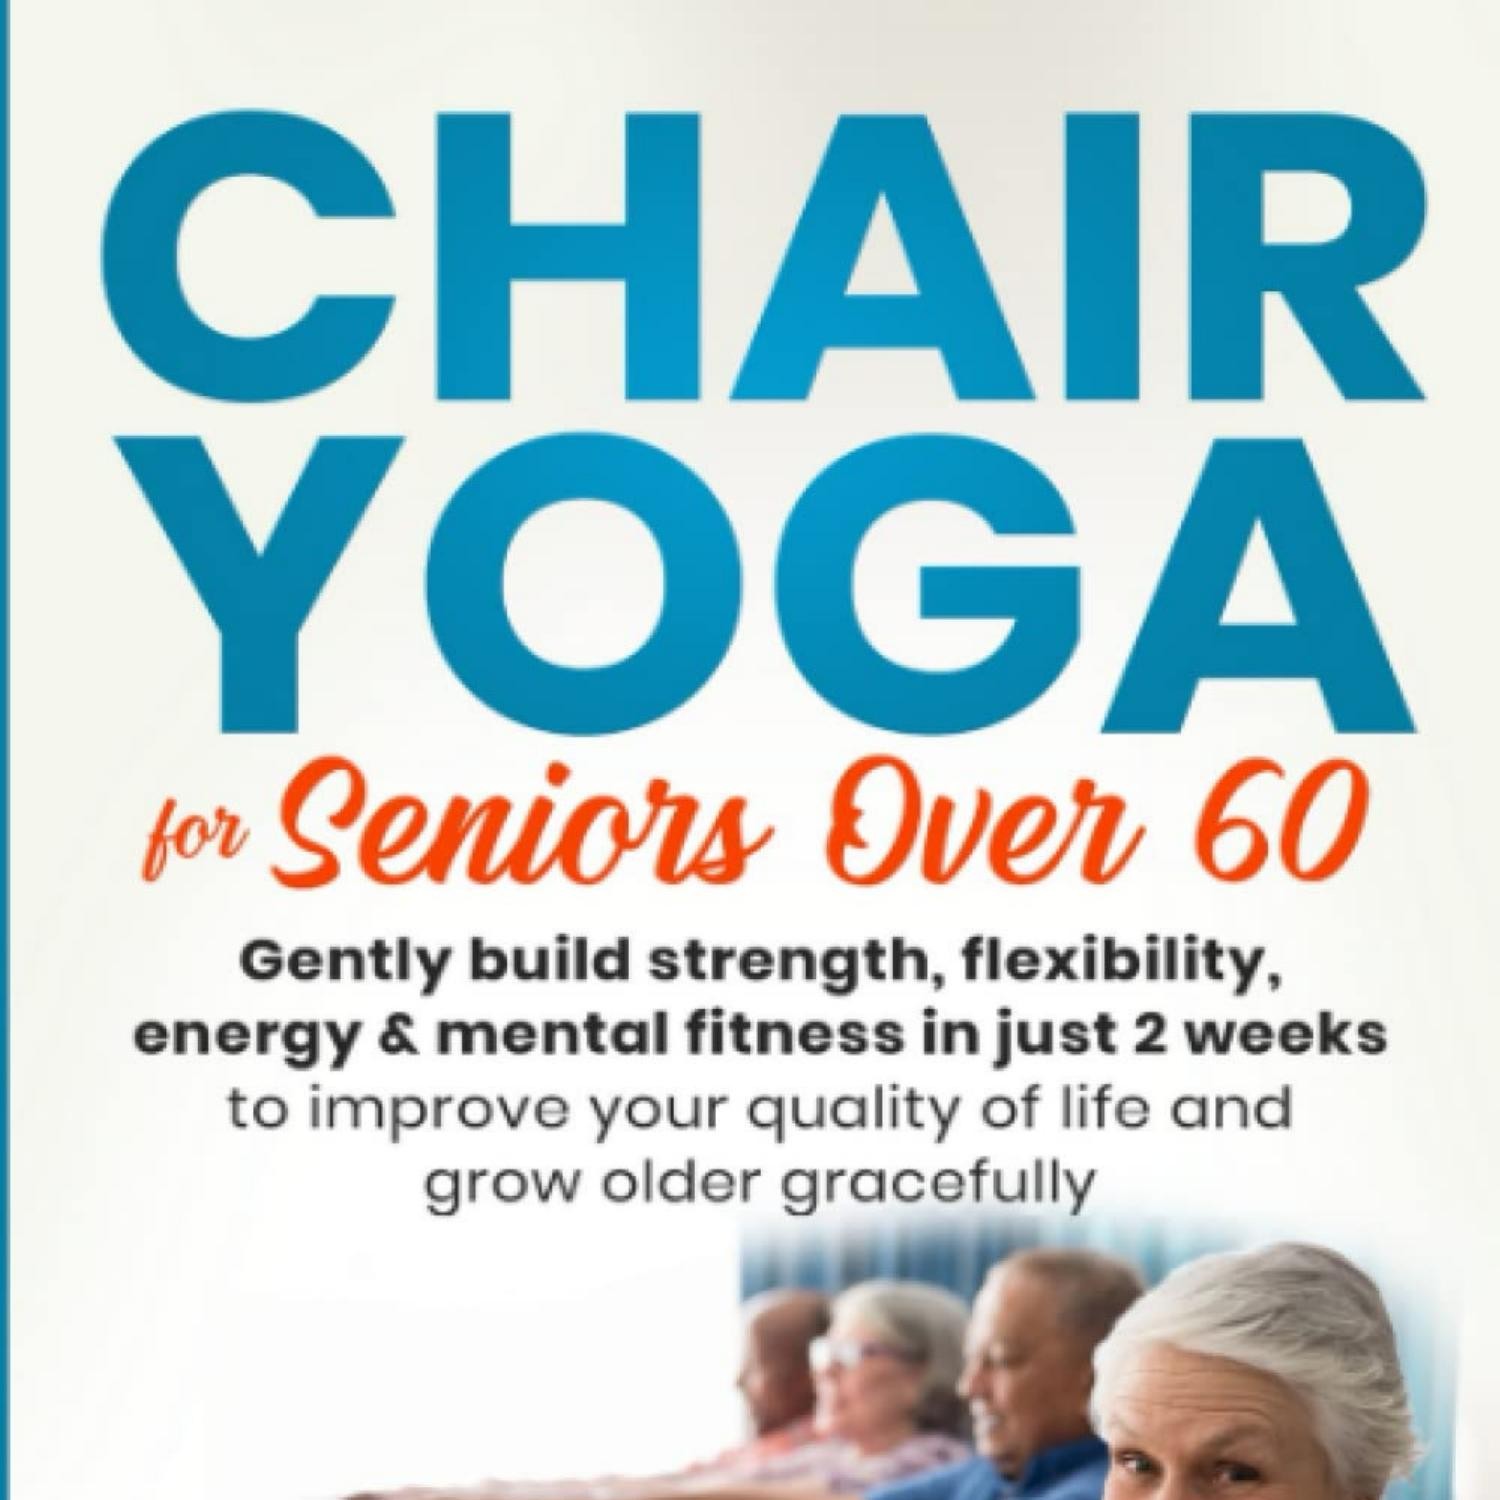 Senior Citizen Chair Yoga For Seniors Printable